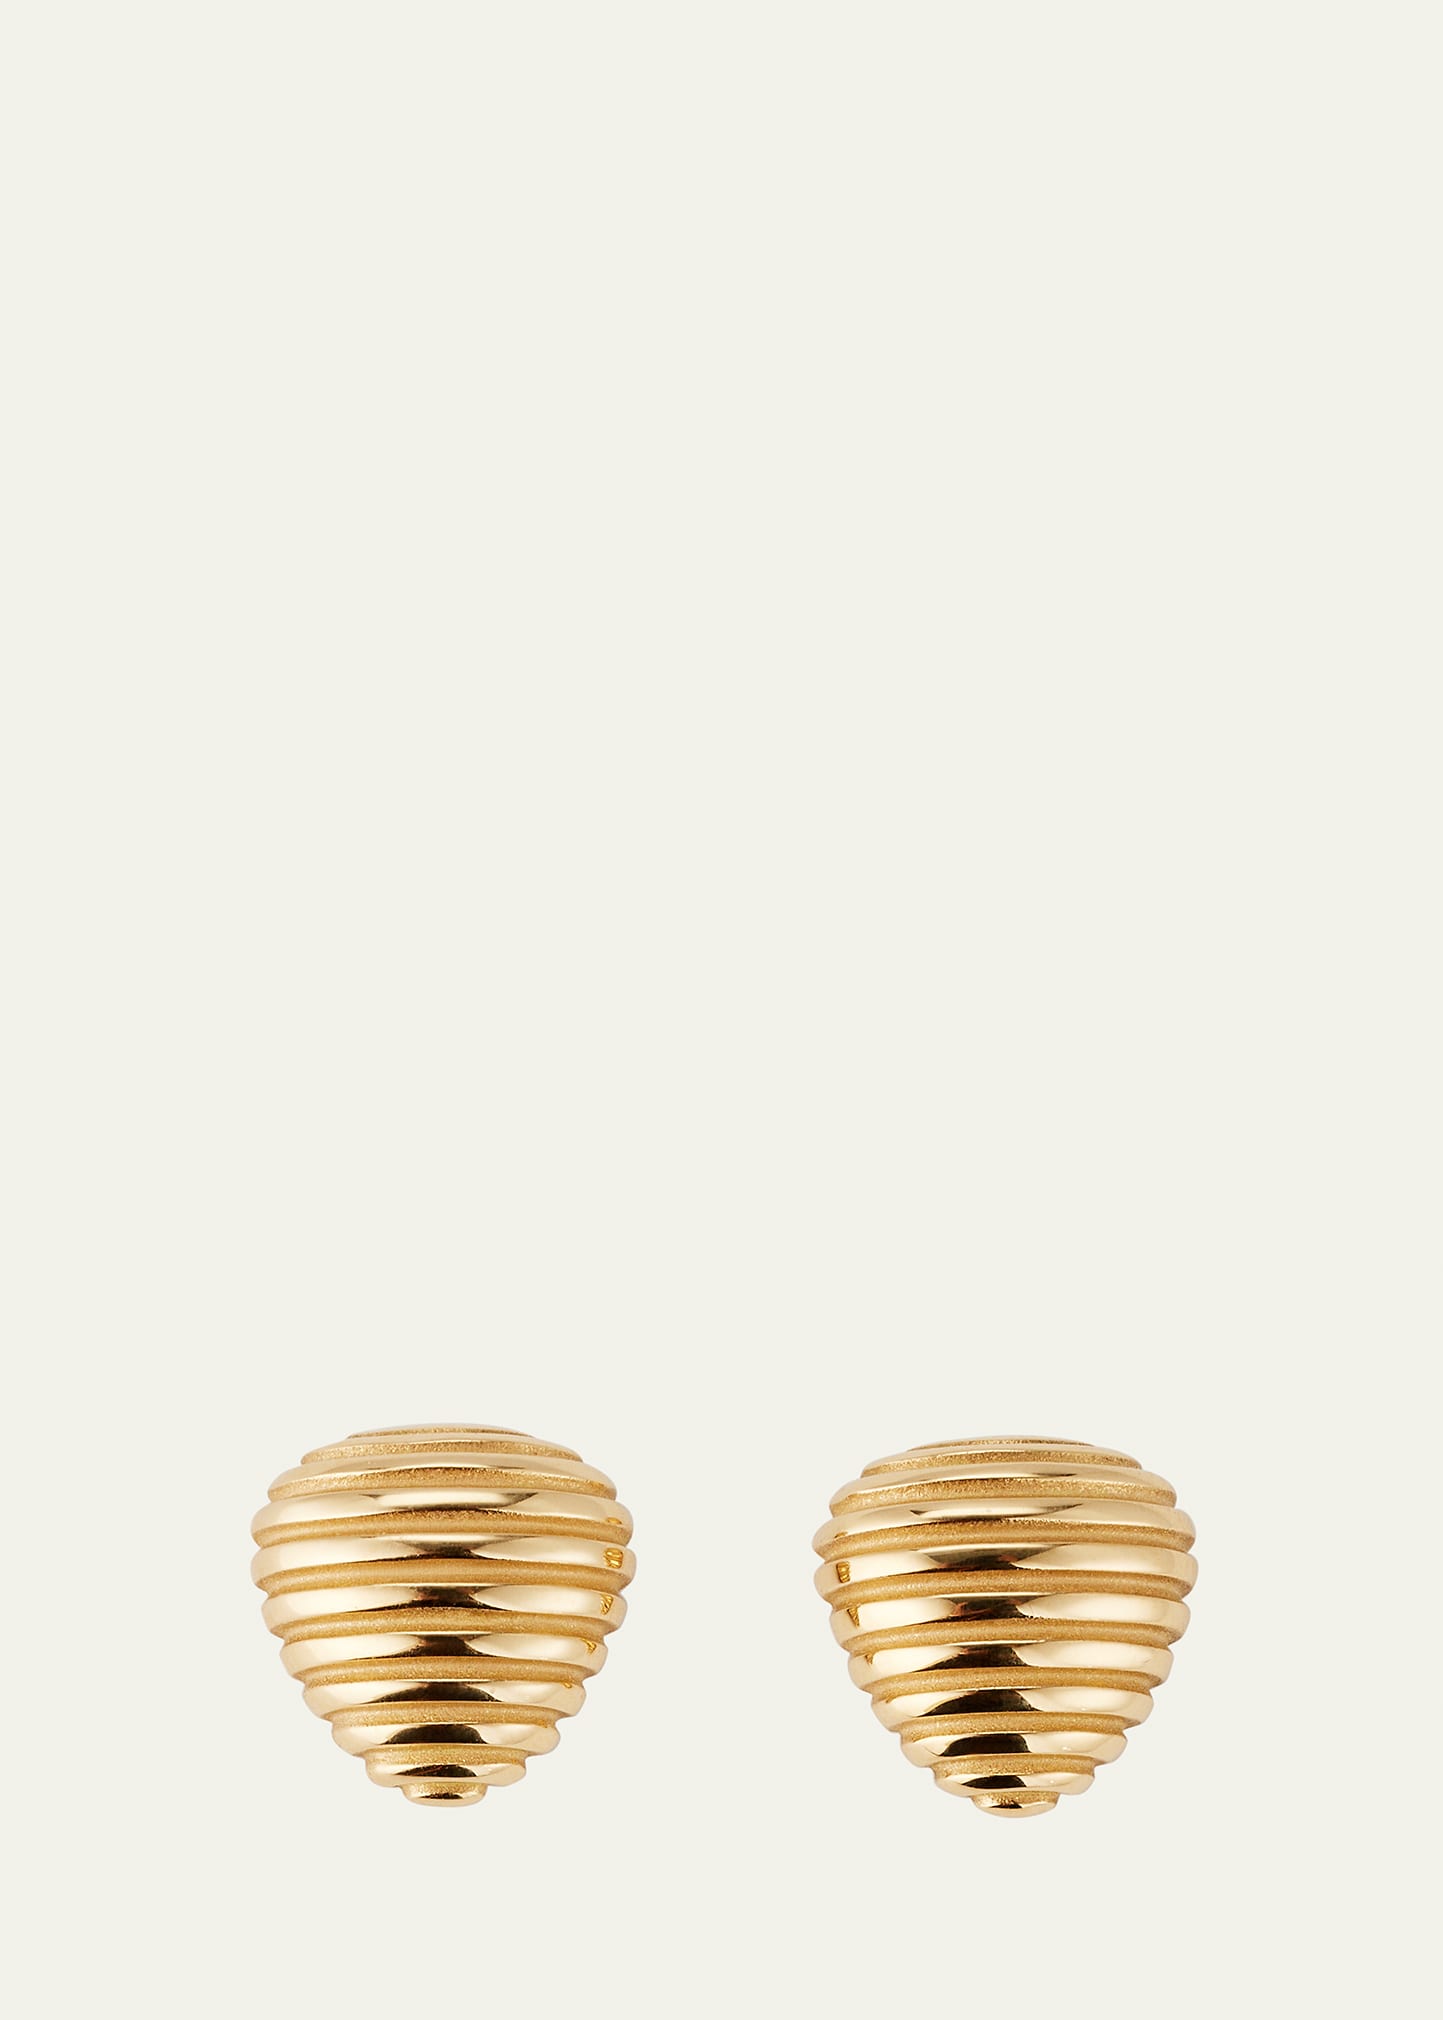 Gold Olar Teardrop Earrings